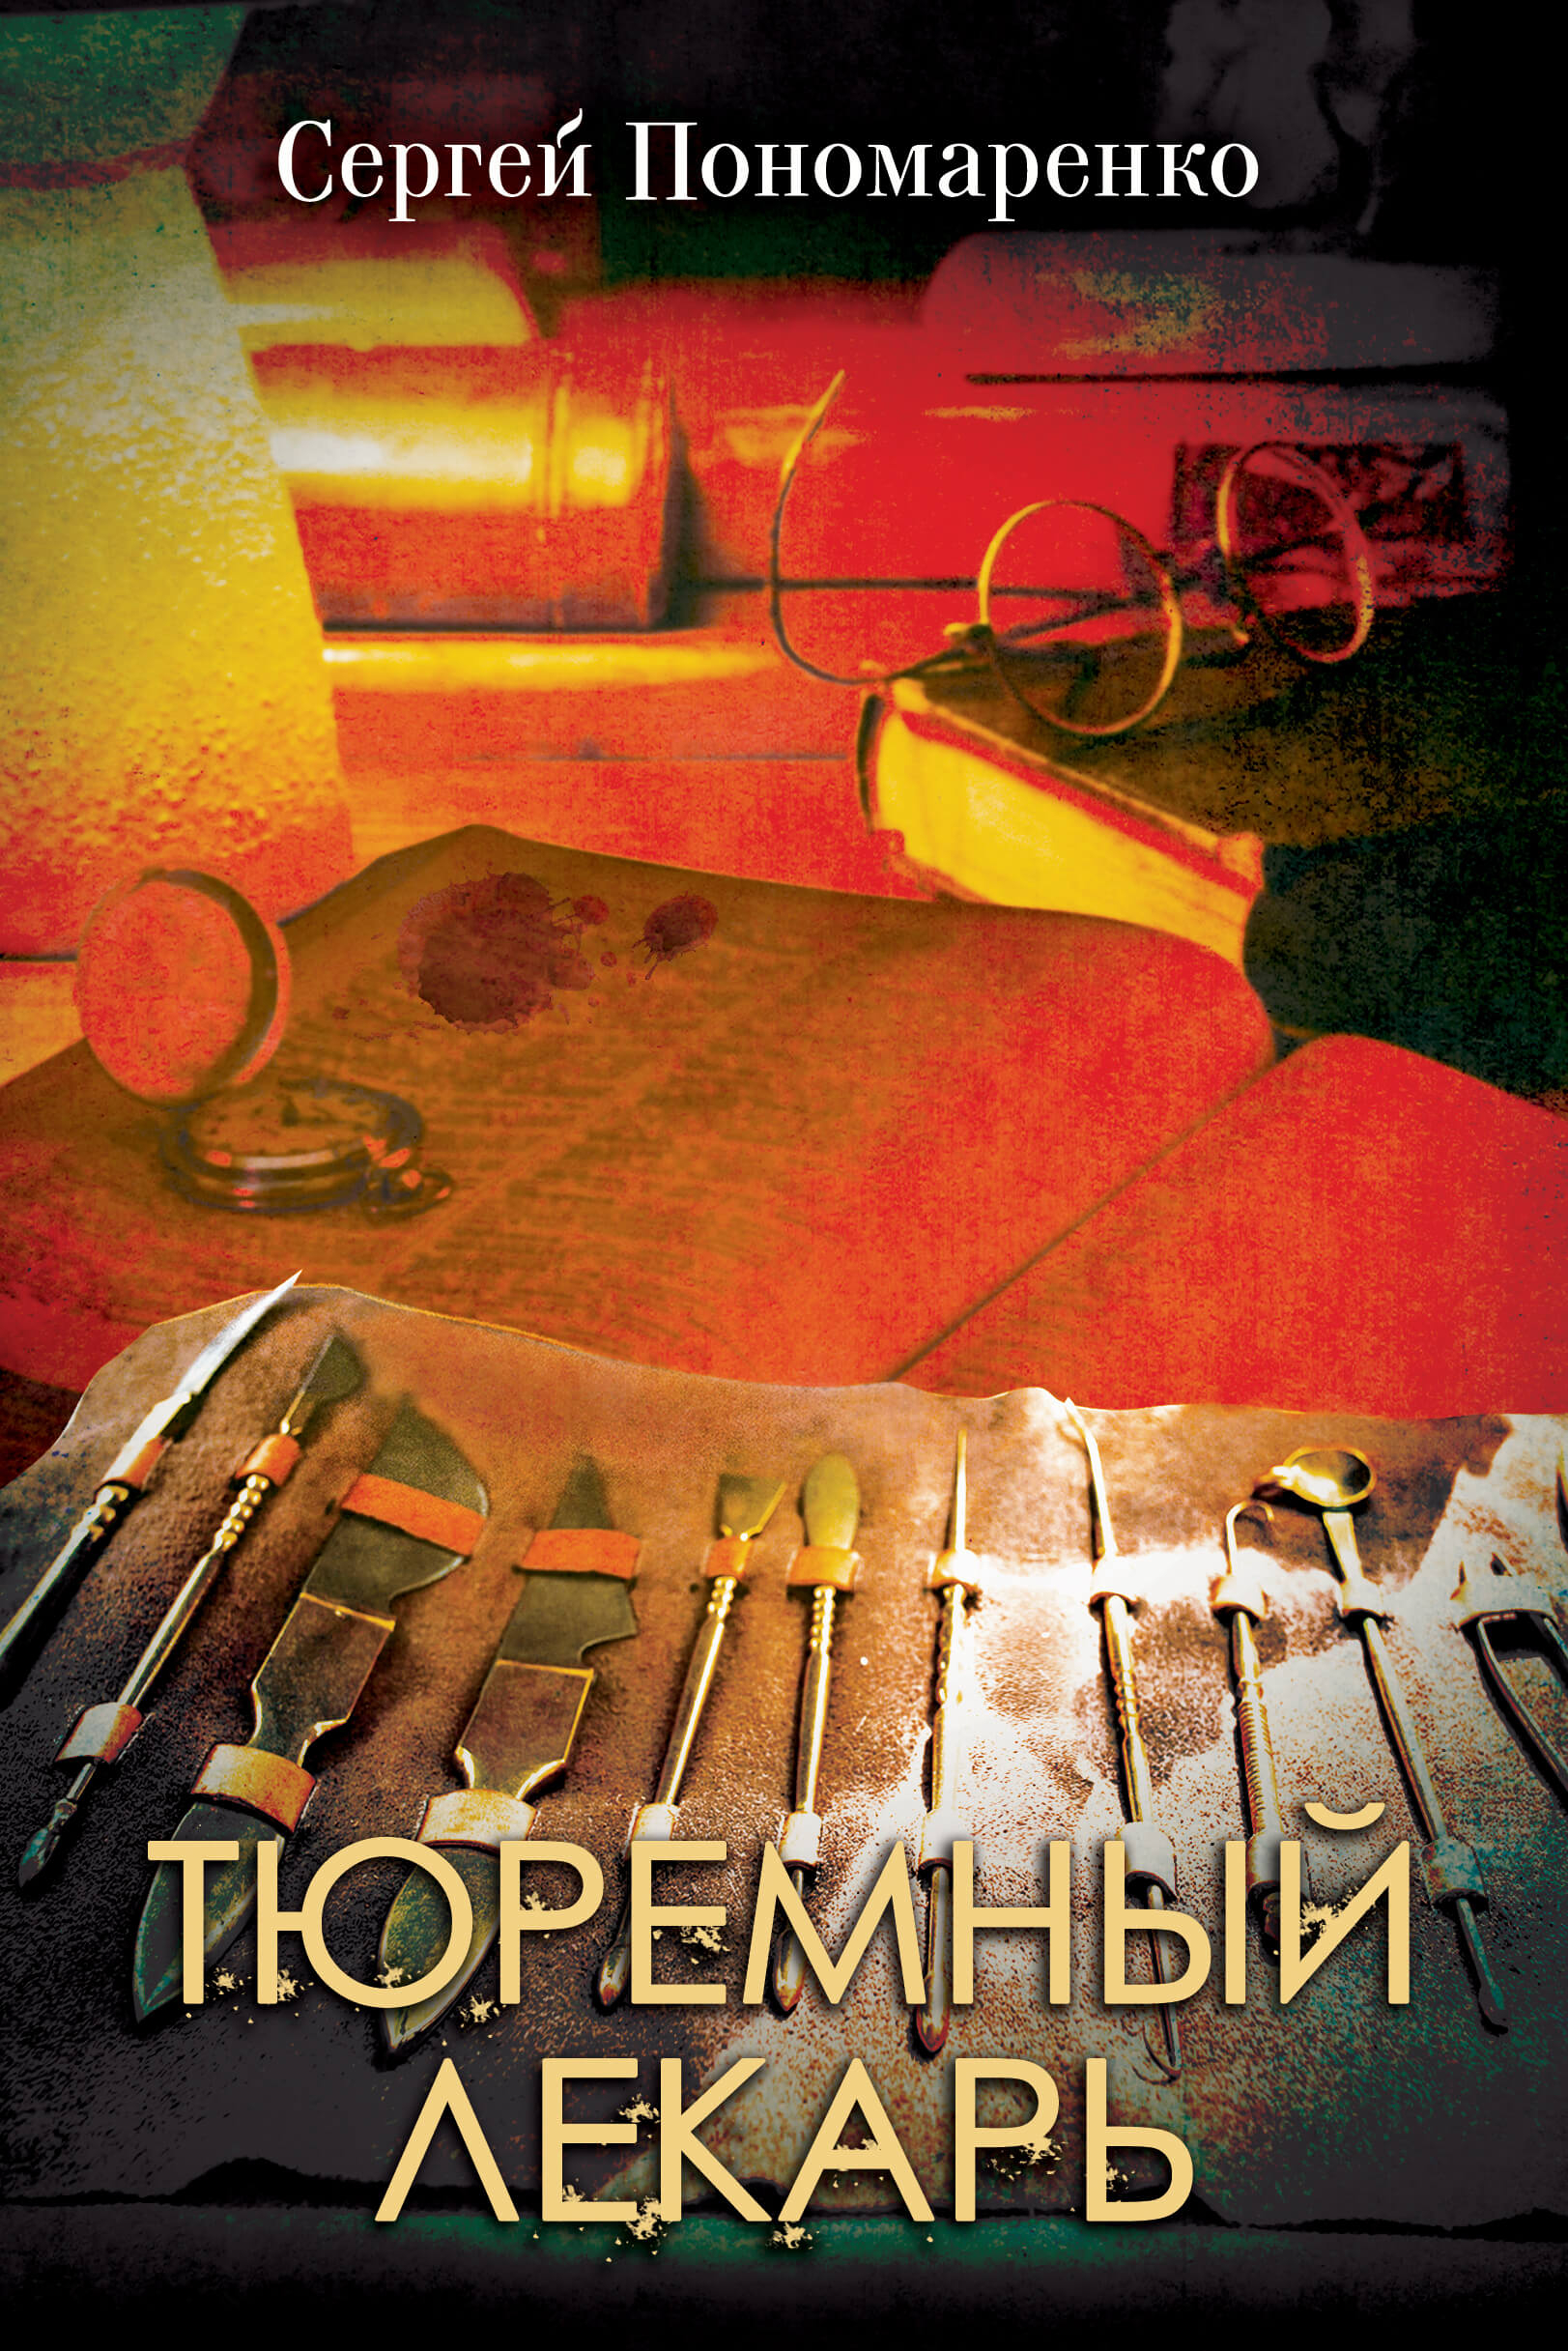 Тюремный лекарь. Автор — Сергей Пономаренко. 